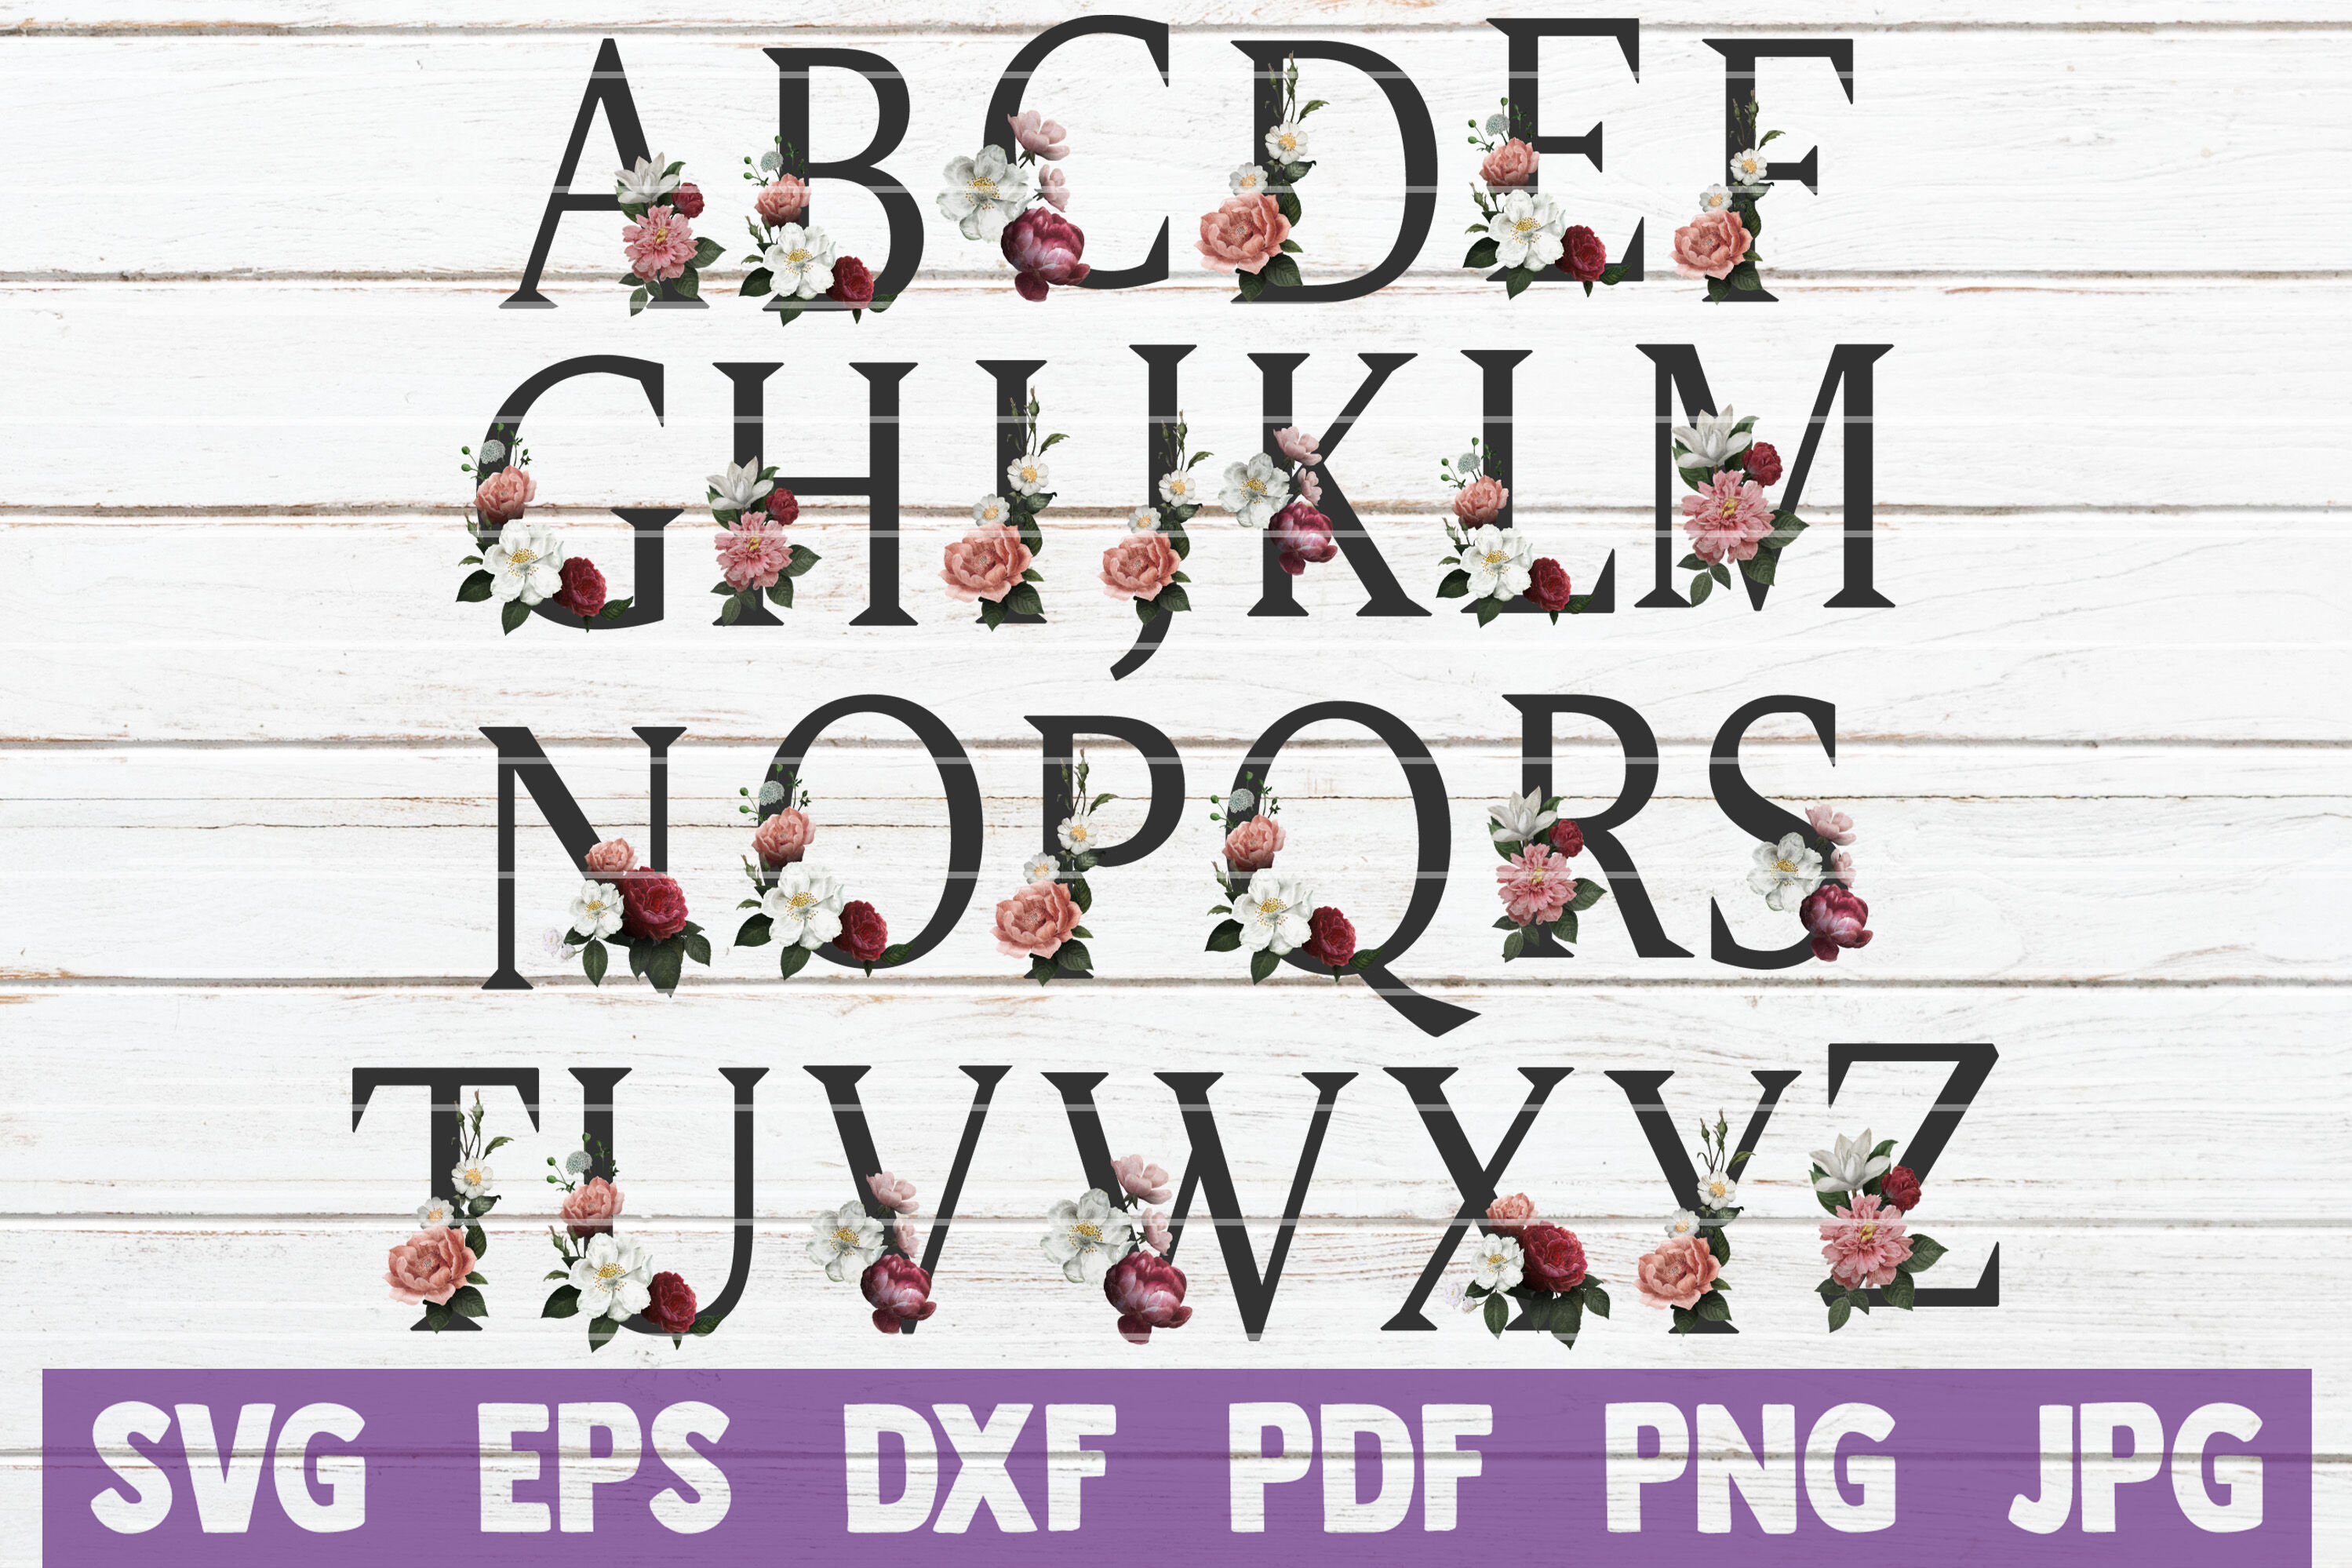 Free Free 248 Floral Alphabet Svg SVG PNG EPS DXF File